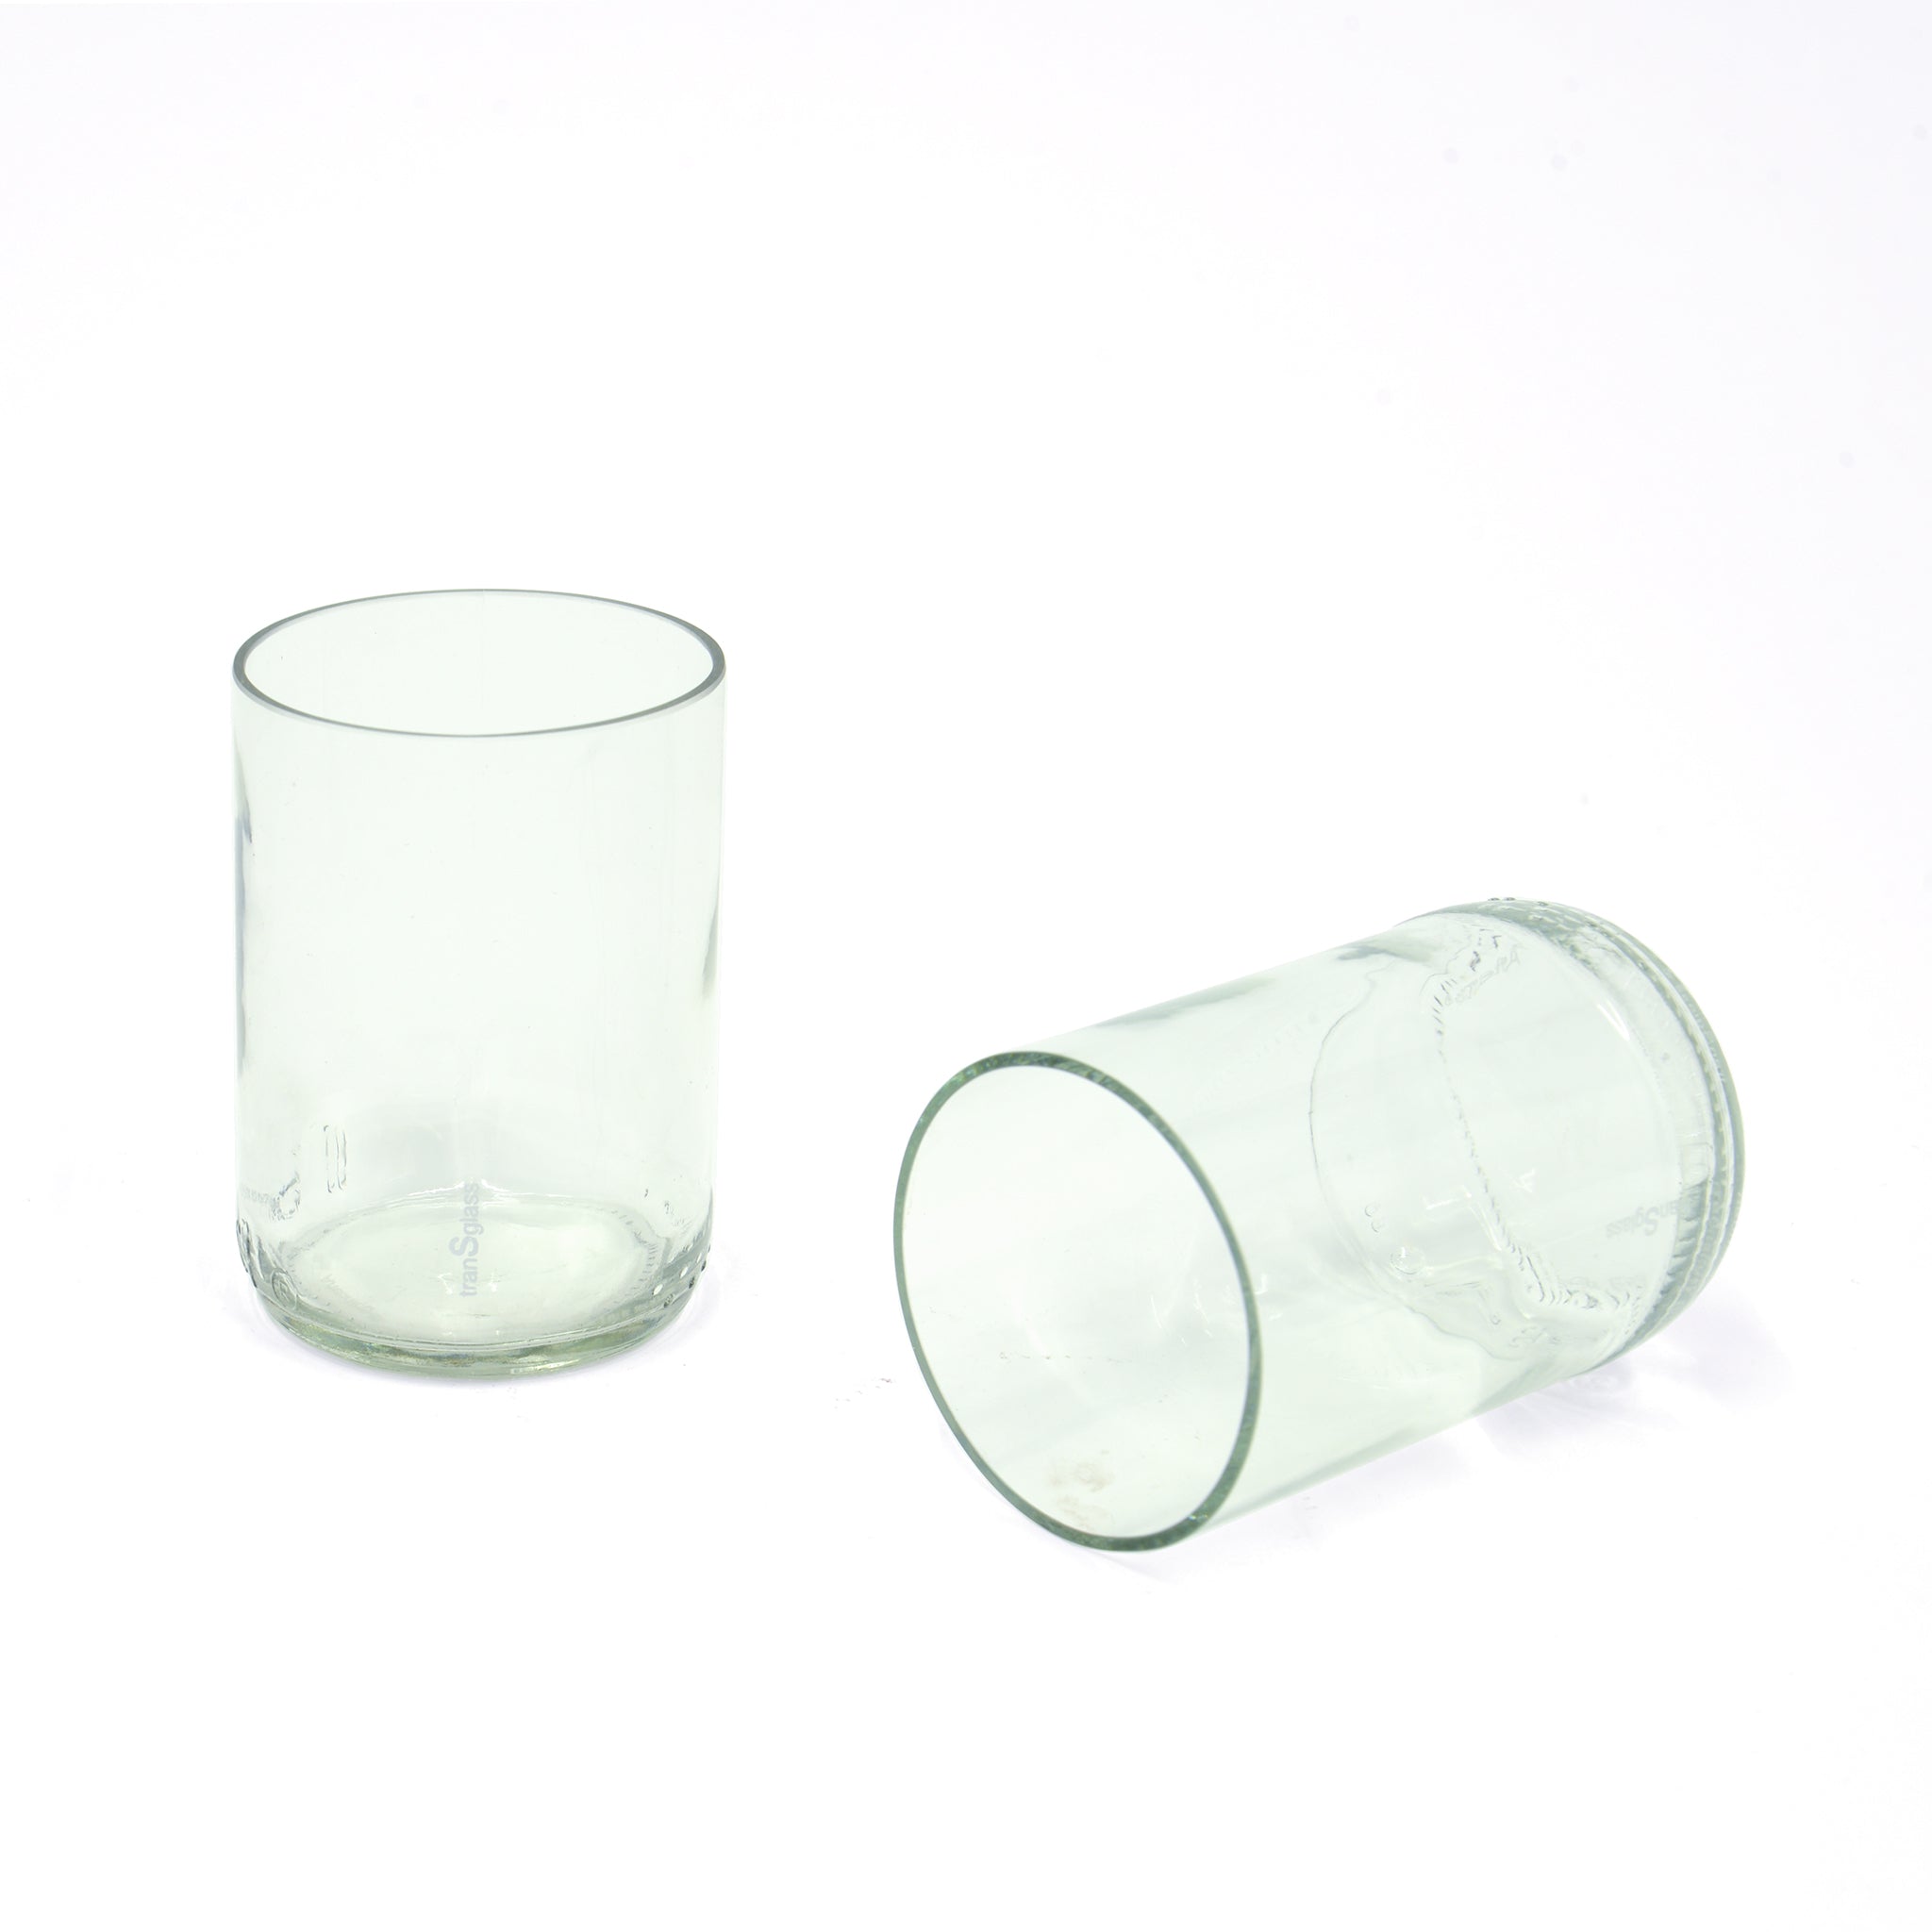 Transglass Set of 2 Glasses - clear